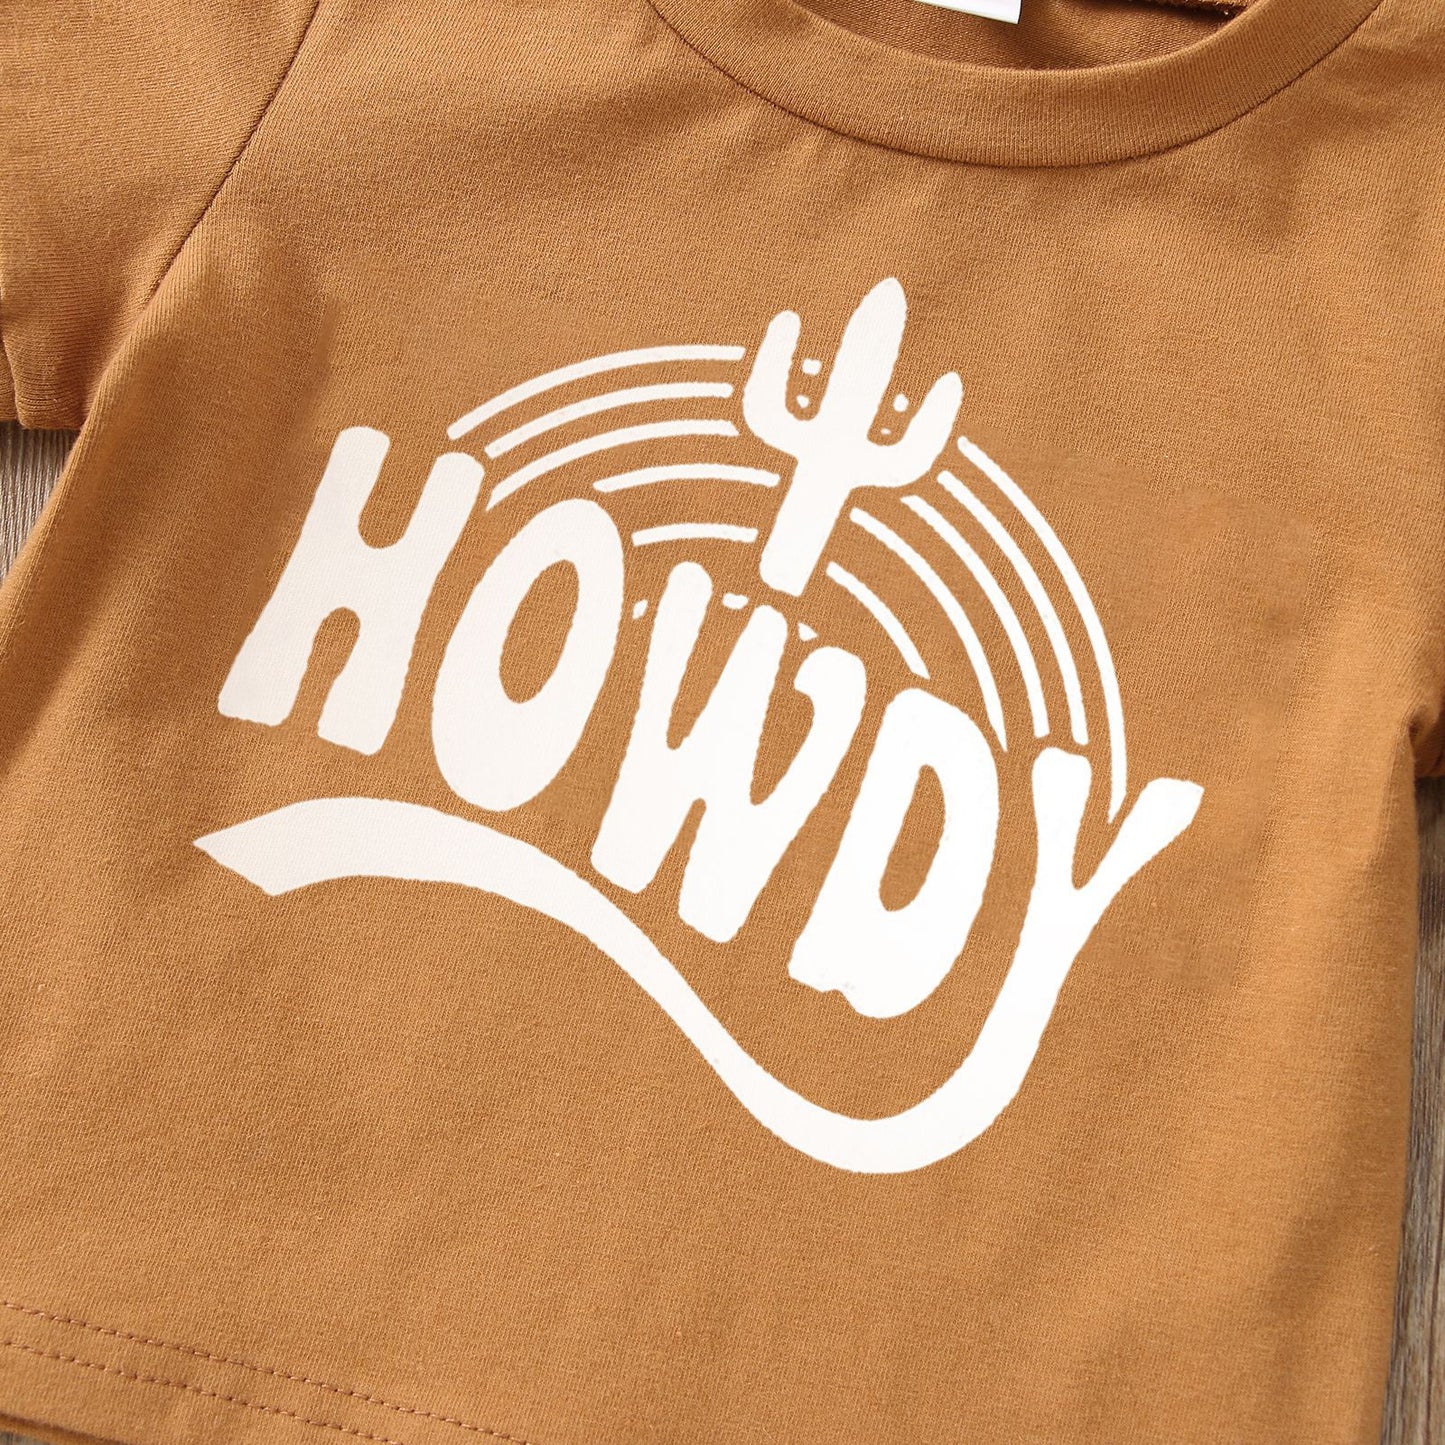 "Howdy" Short Sleeve Top & Shorts